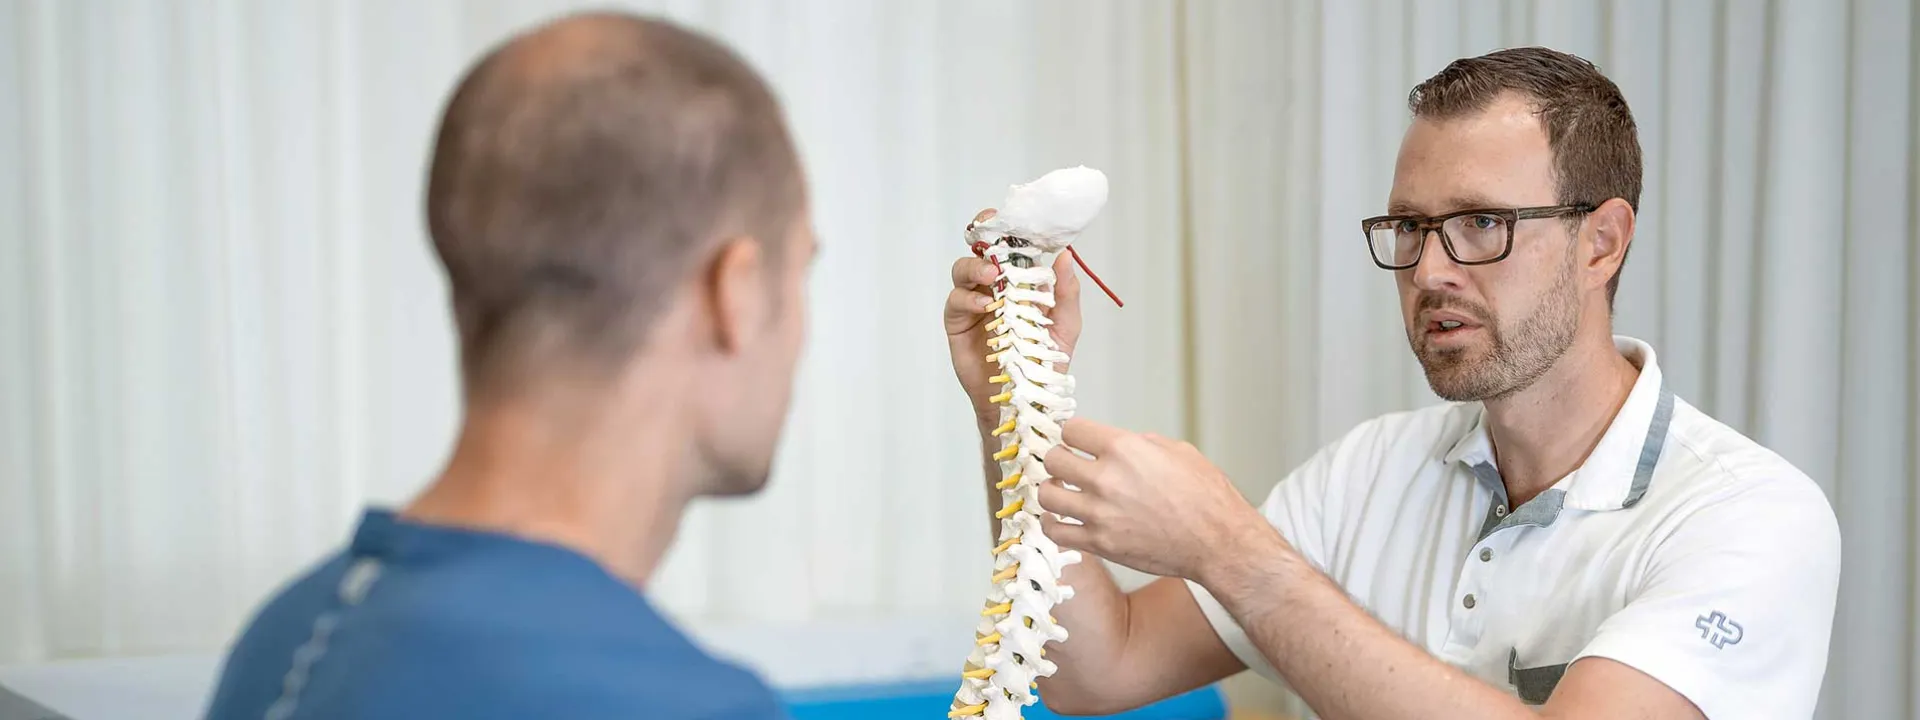 Symbolbild Behandlung von Rückenschmerzen